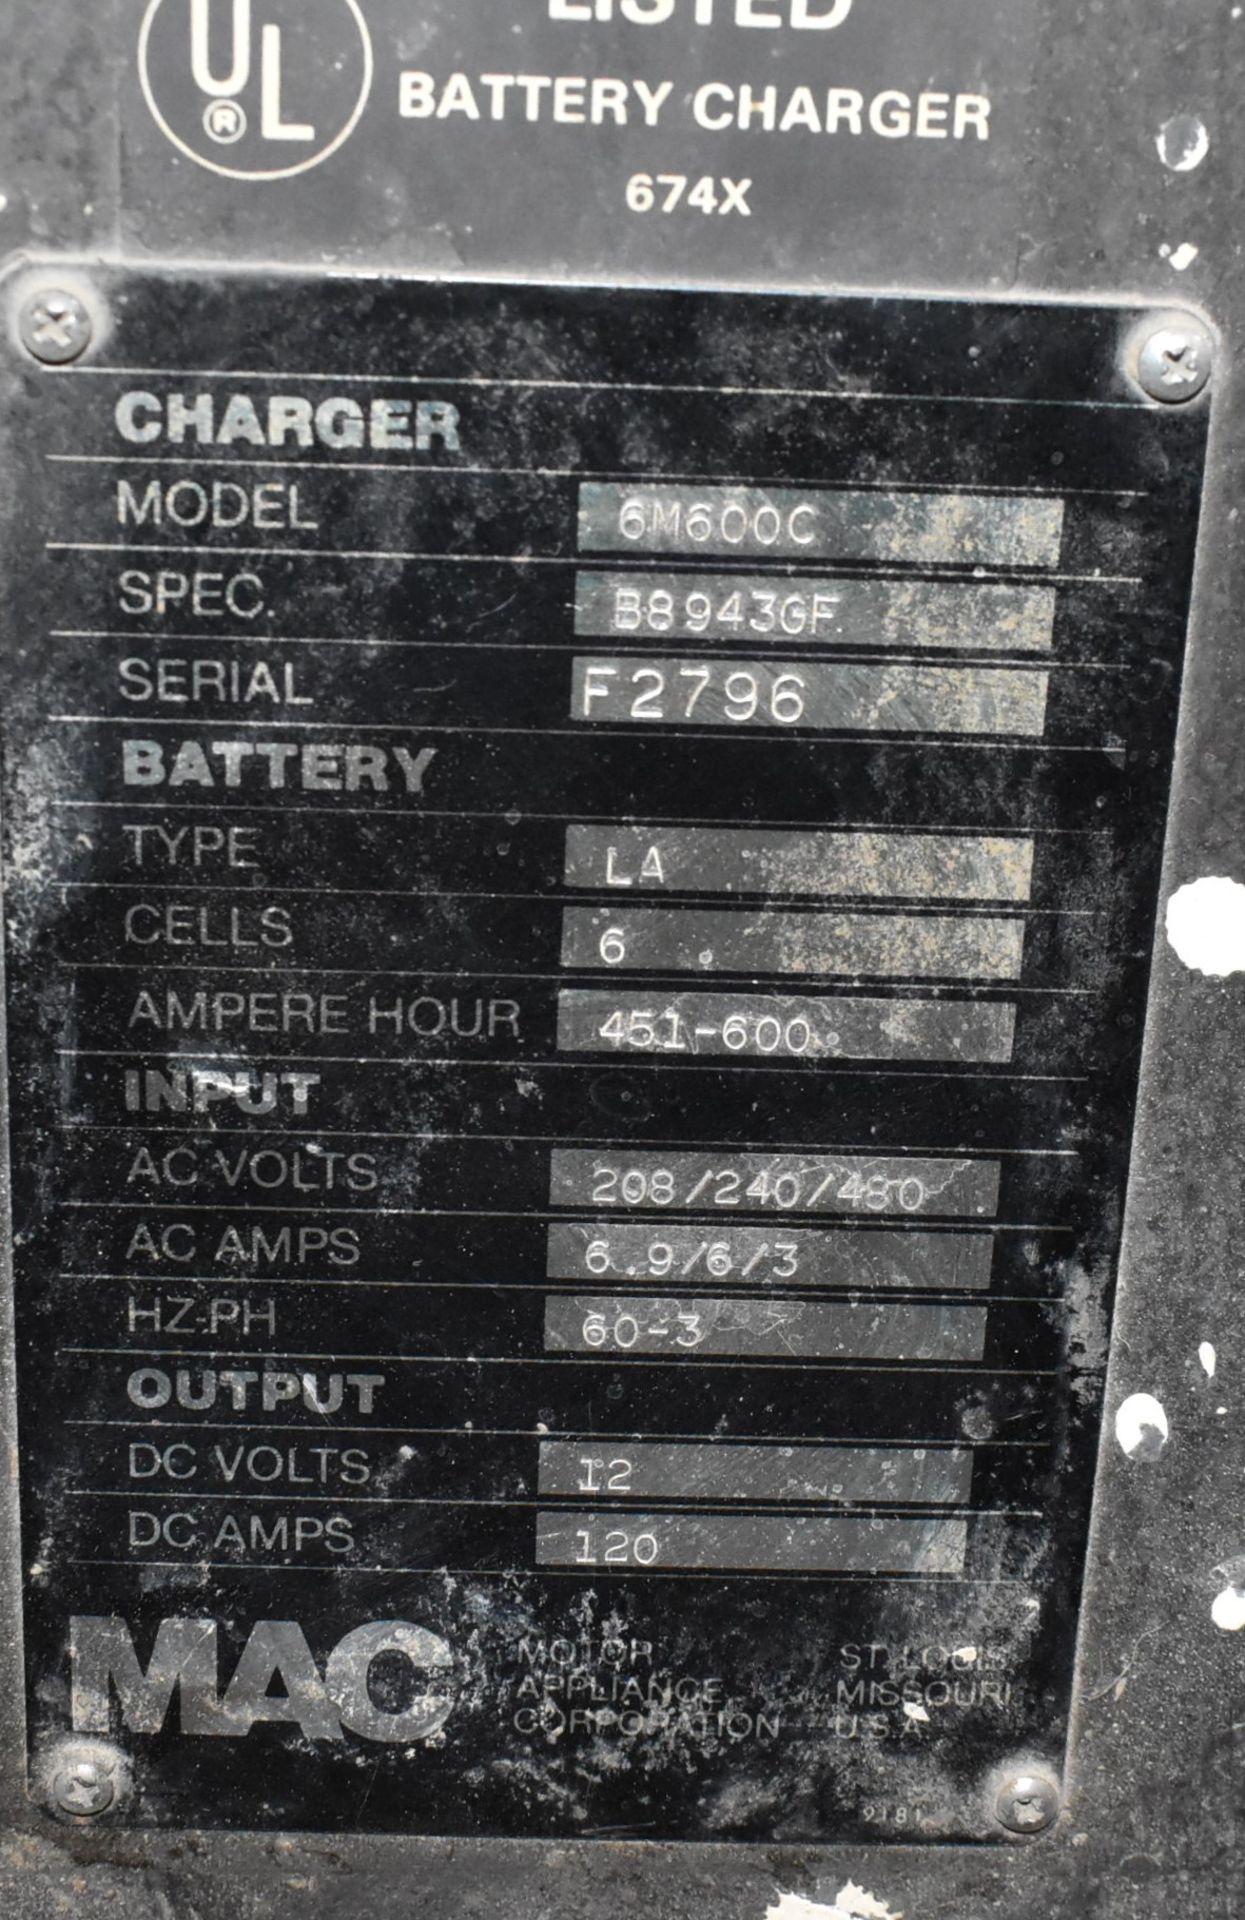 MAC 6M600C 12 V BATTERY CHARGER, S/N B8943GF (CI) - Image 2 of 4